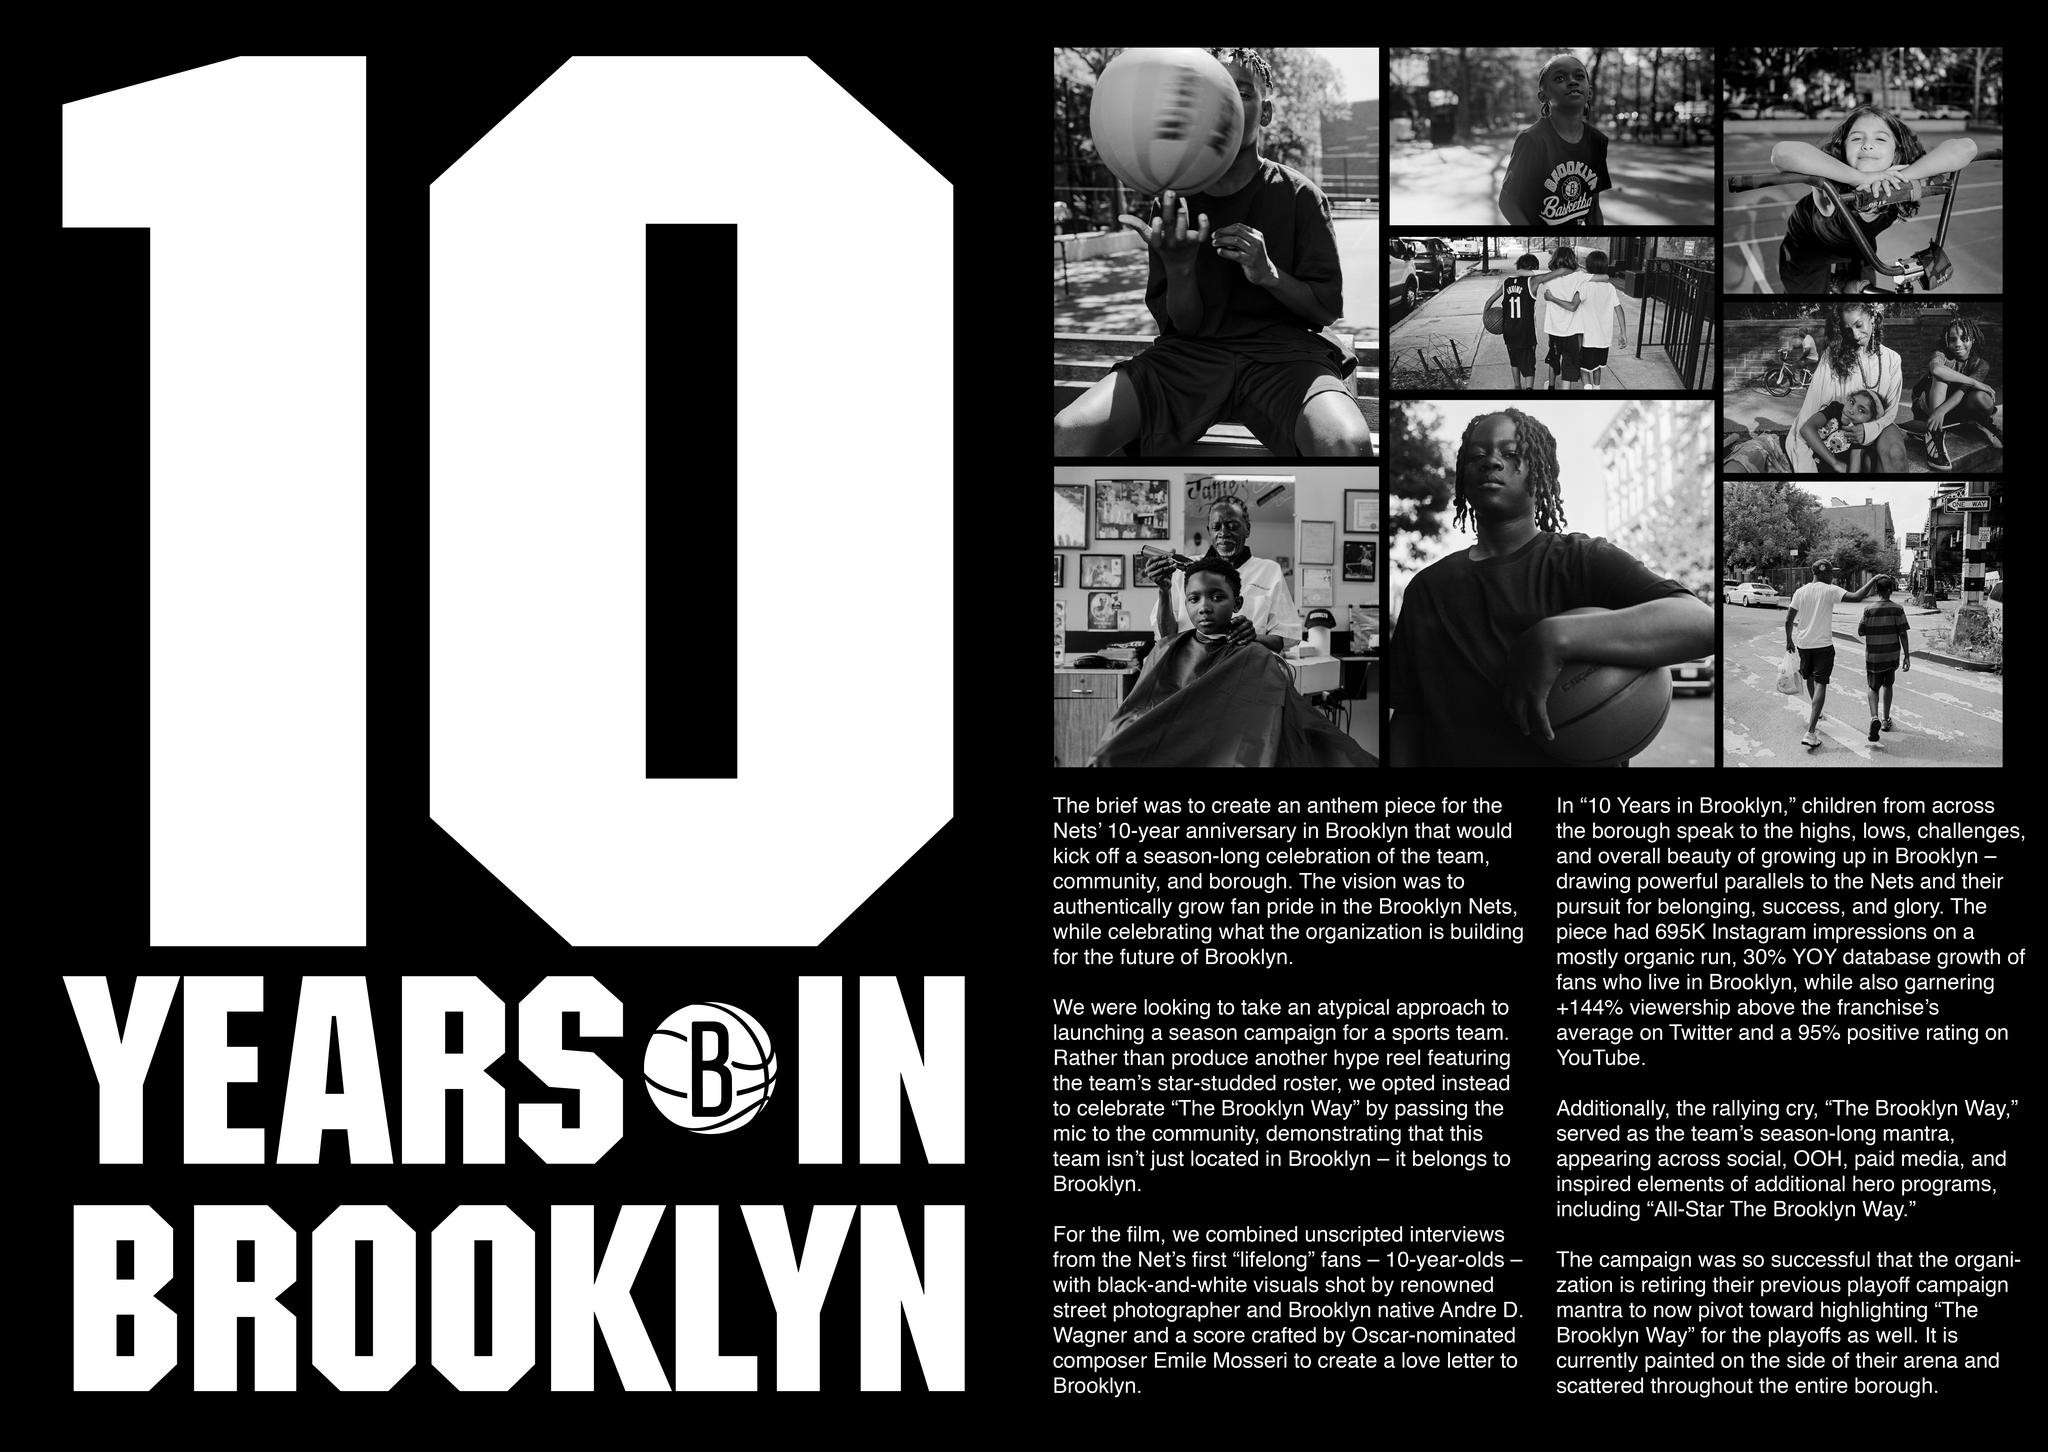 10 Years in Brooklyn